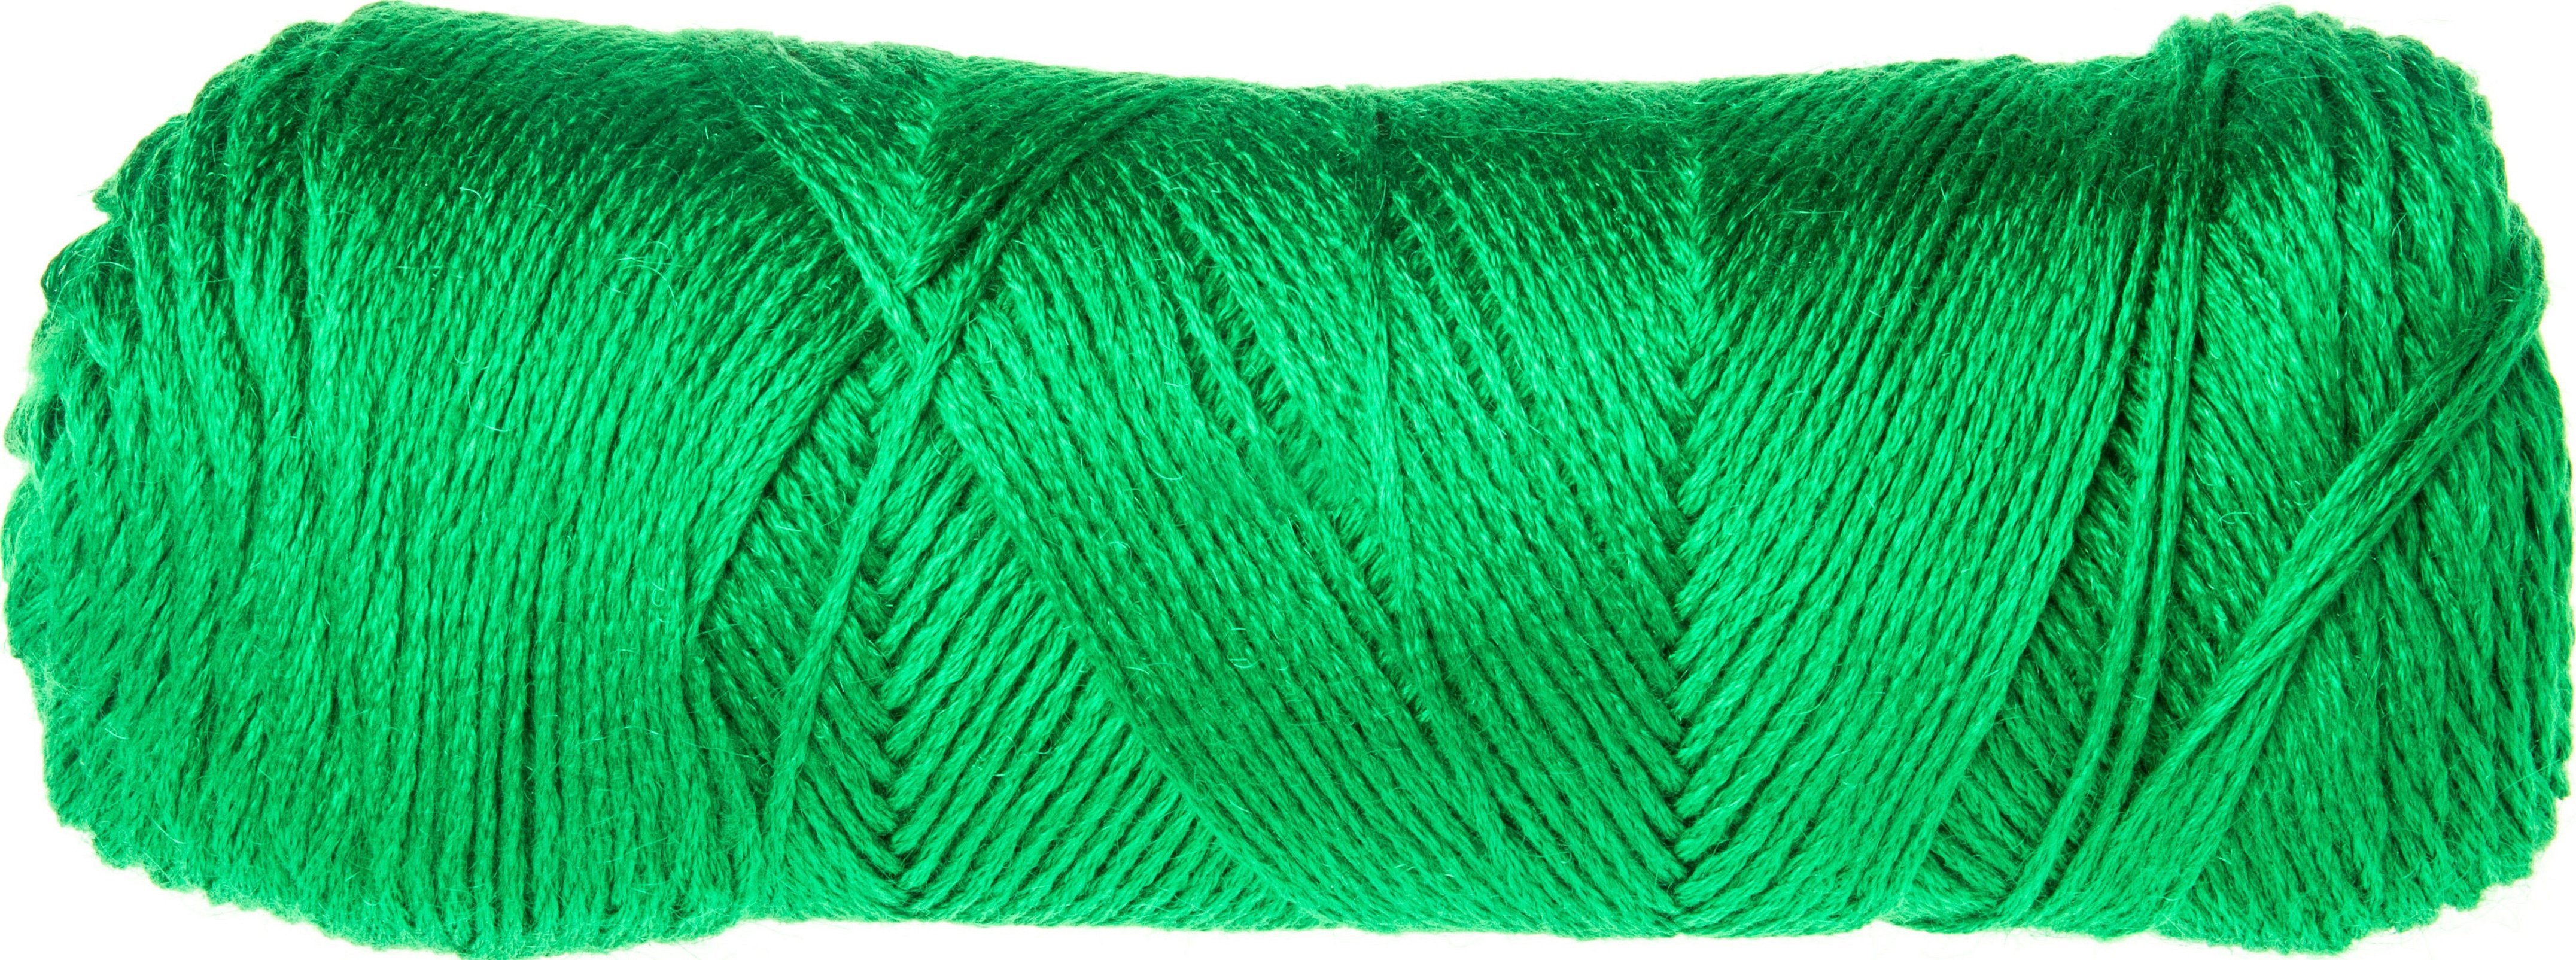 Пряжа шерсть с шелком для вязания